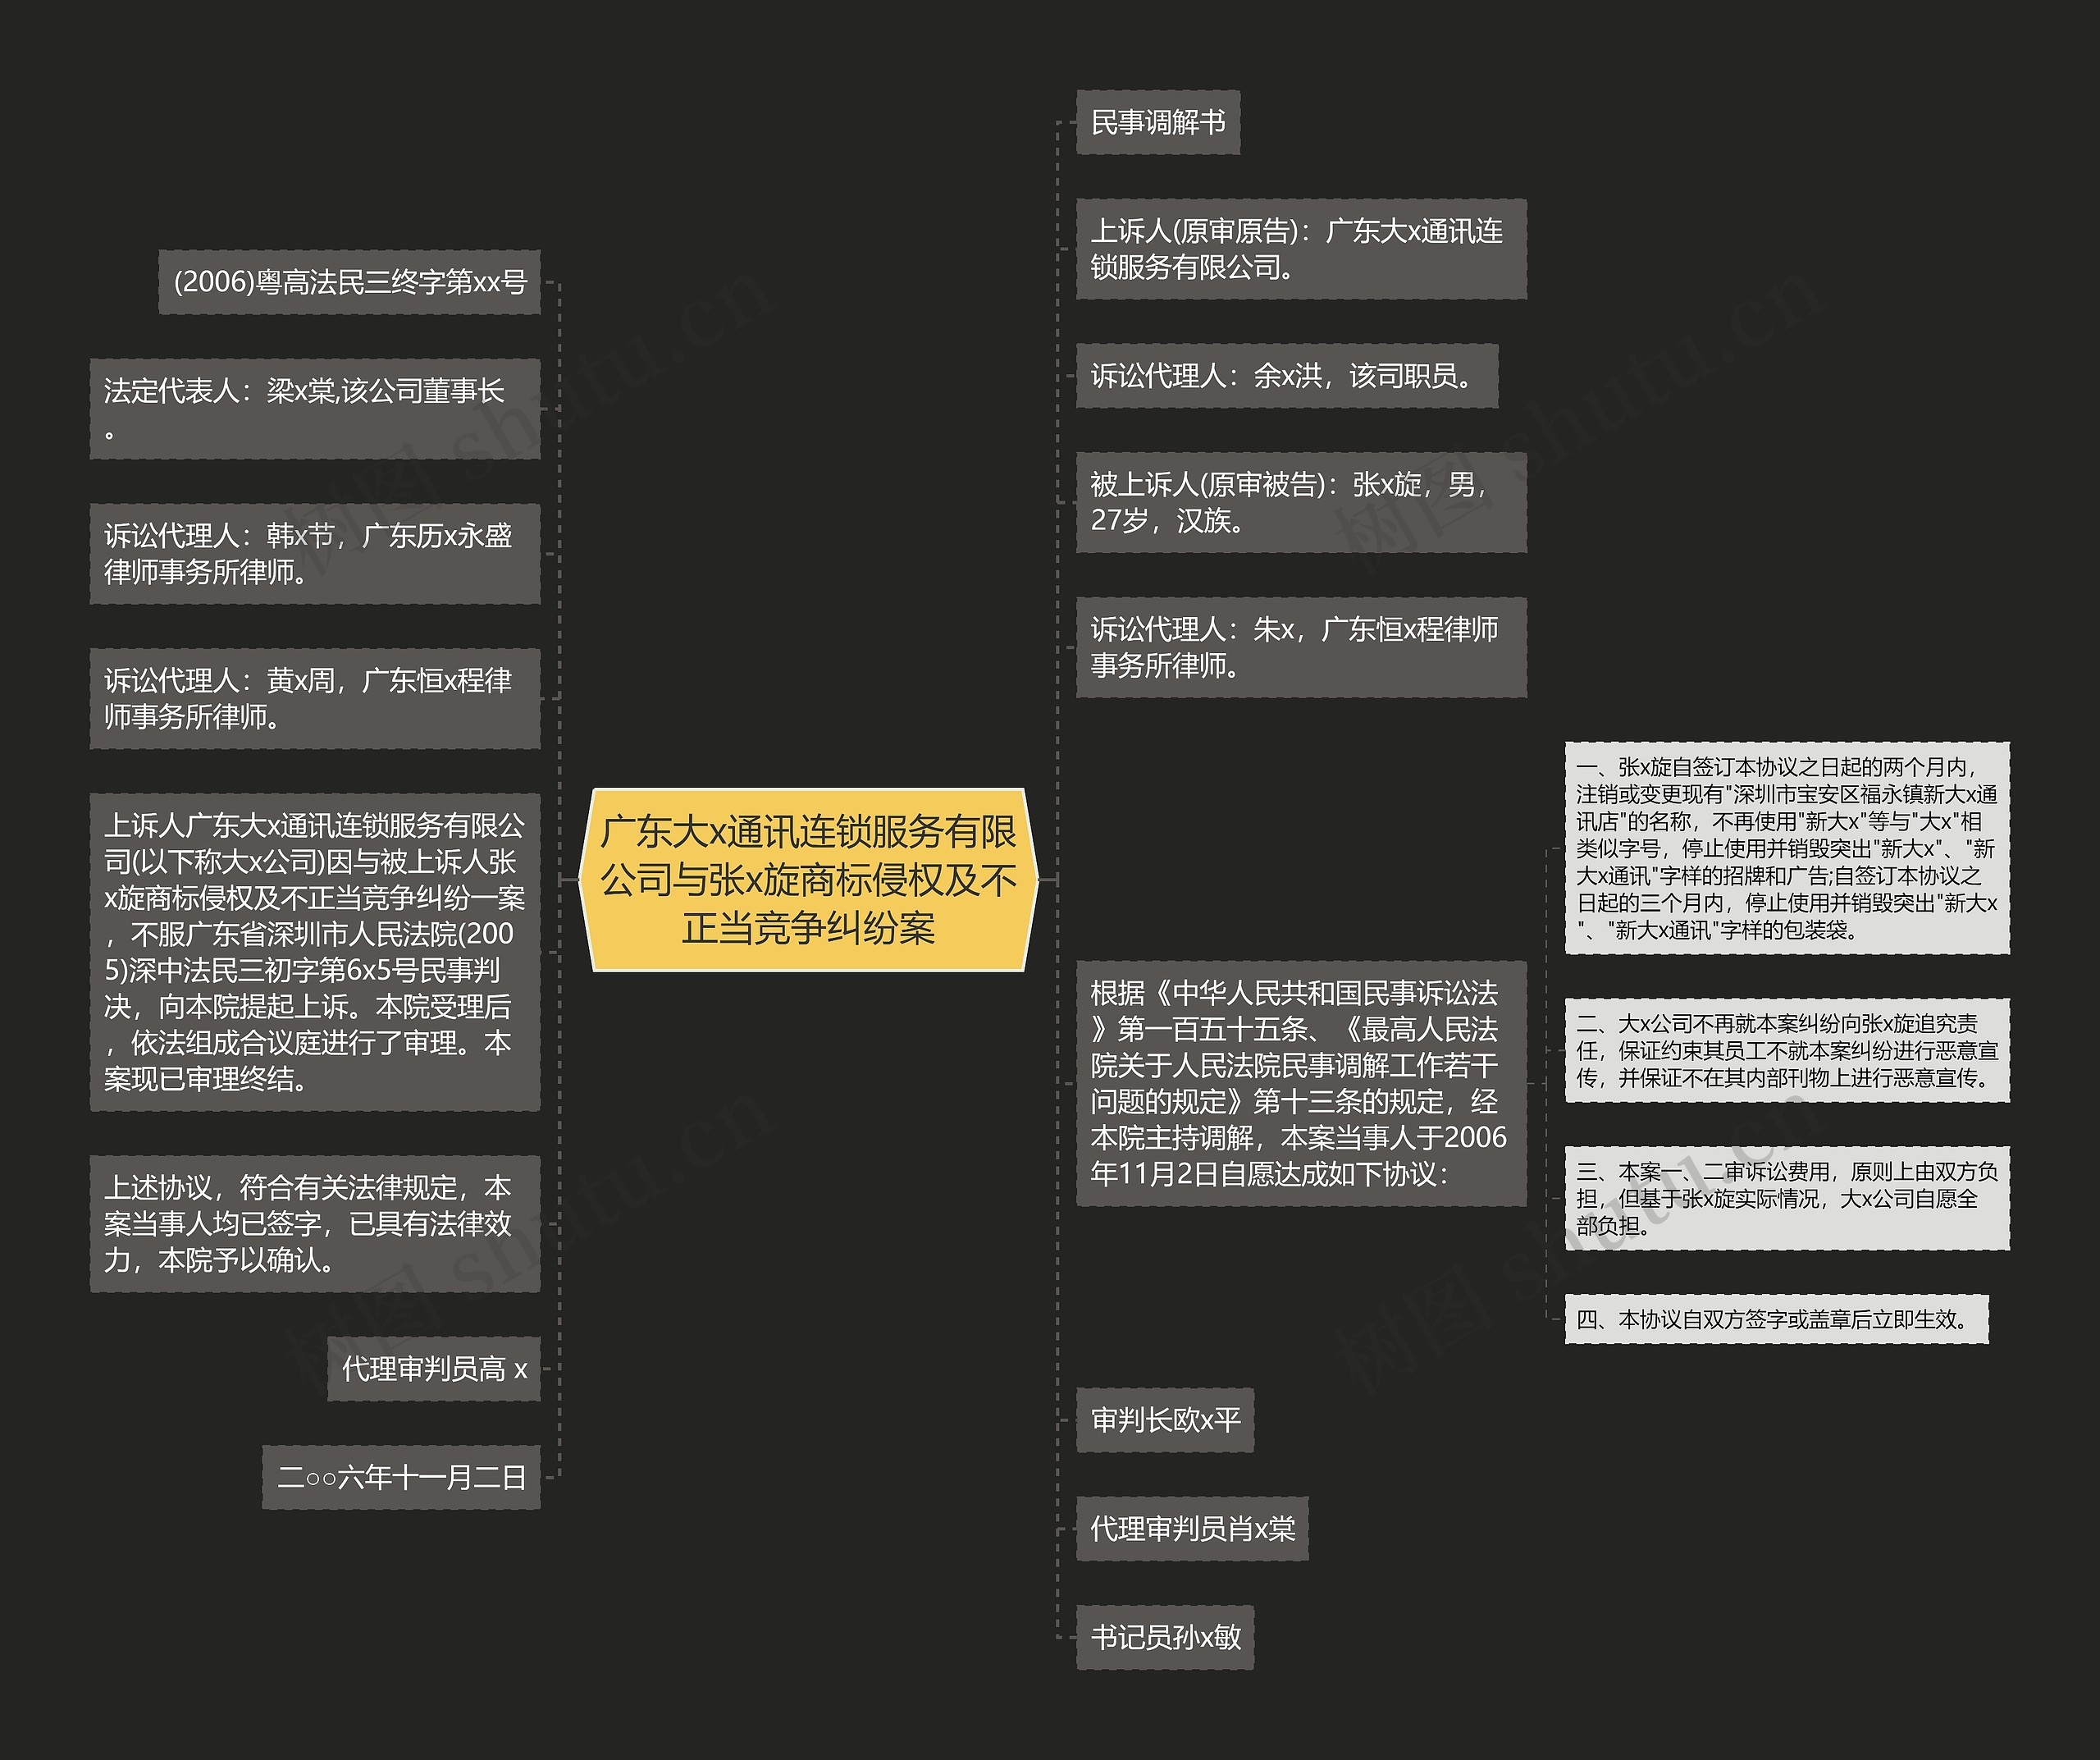 广东大x通讯连锁服务有限公司与张x旋商标侵权及不正当竞争纠纷案思维导图